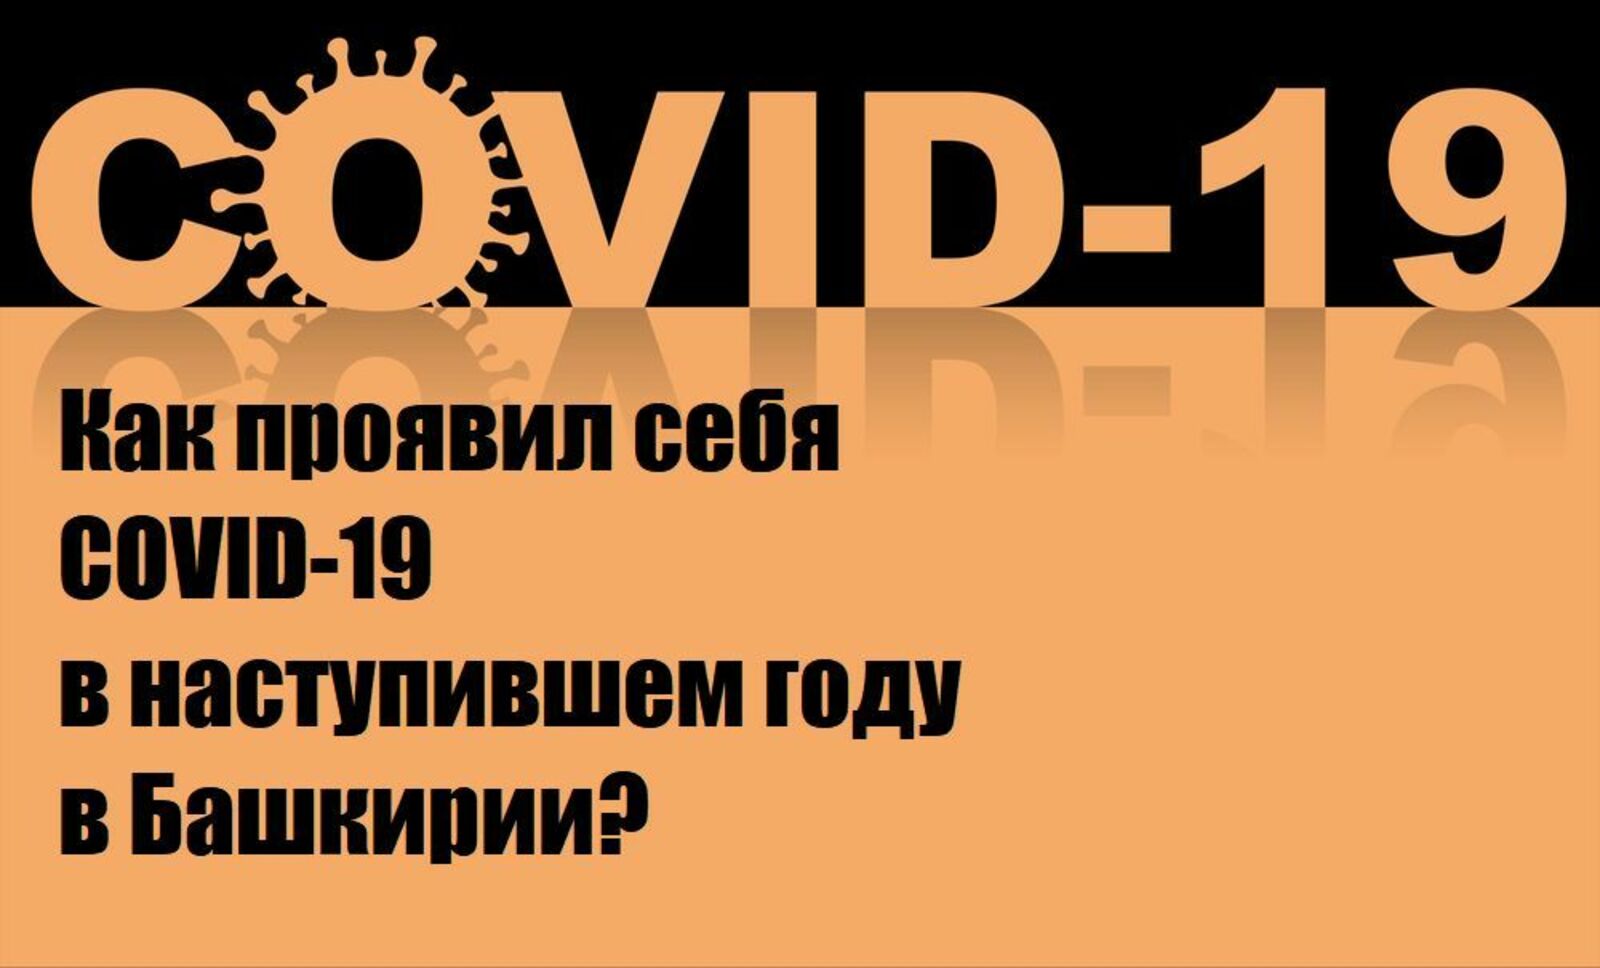 Как проявил себя COVID-19 в наступившем году в Башкирии?